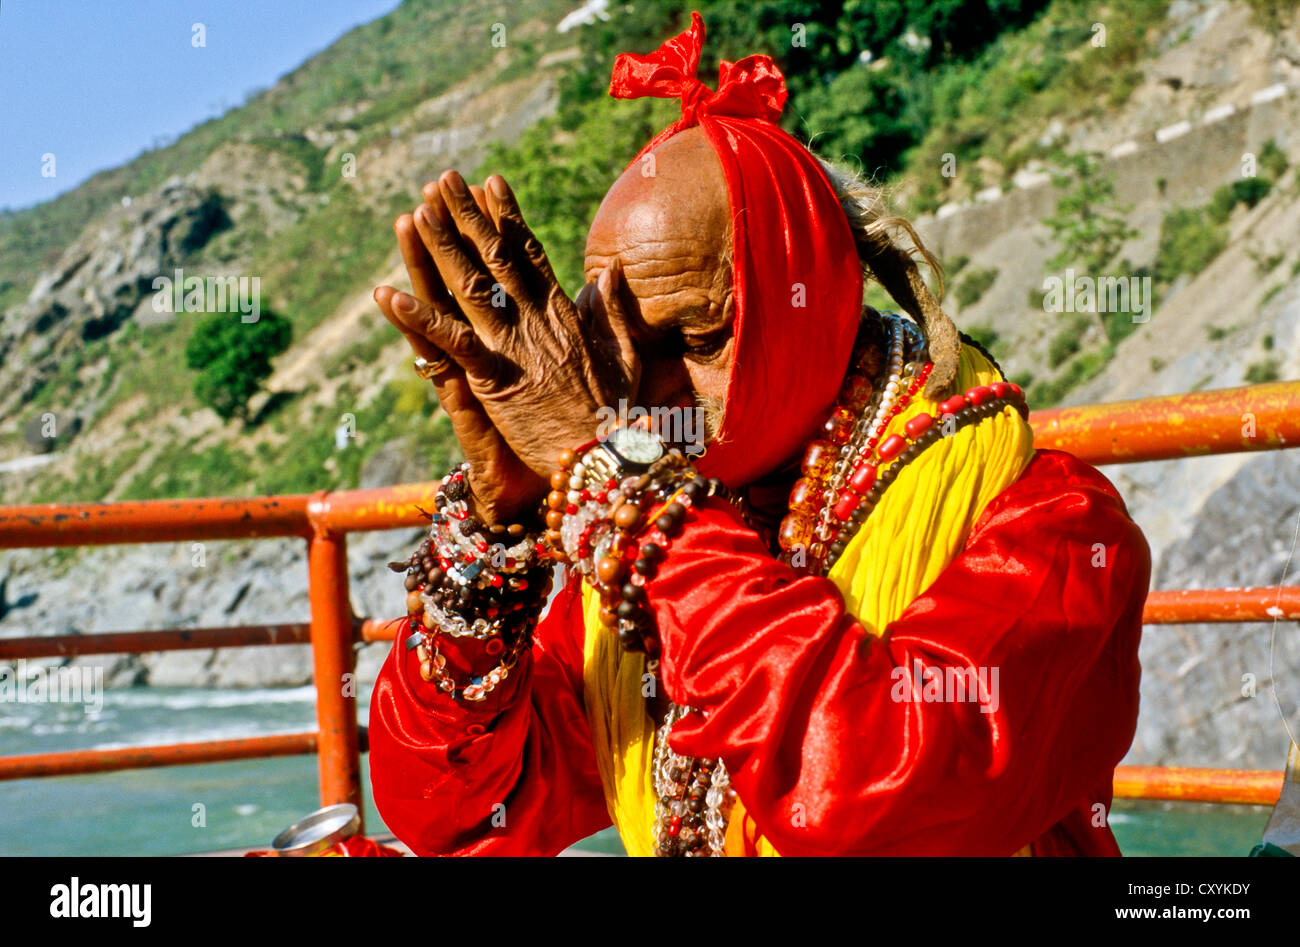 Sadhu, saint homme, priant à Devprayag, la confluence des rivières sainte et Alakananda Baghirati, Devprayag, Inde, Asie Banque D'Images